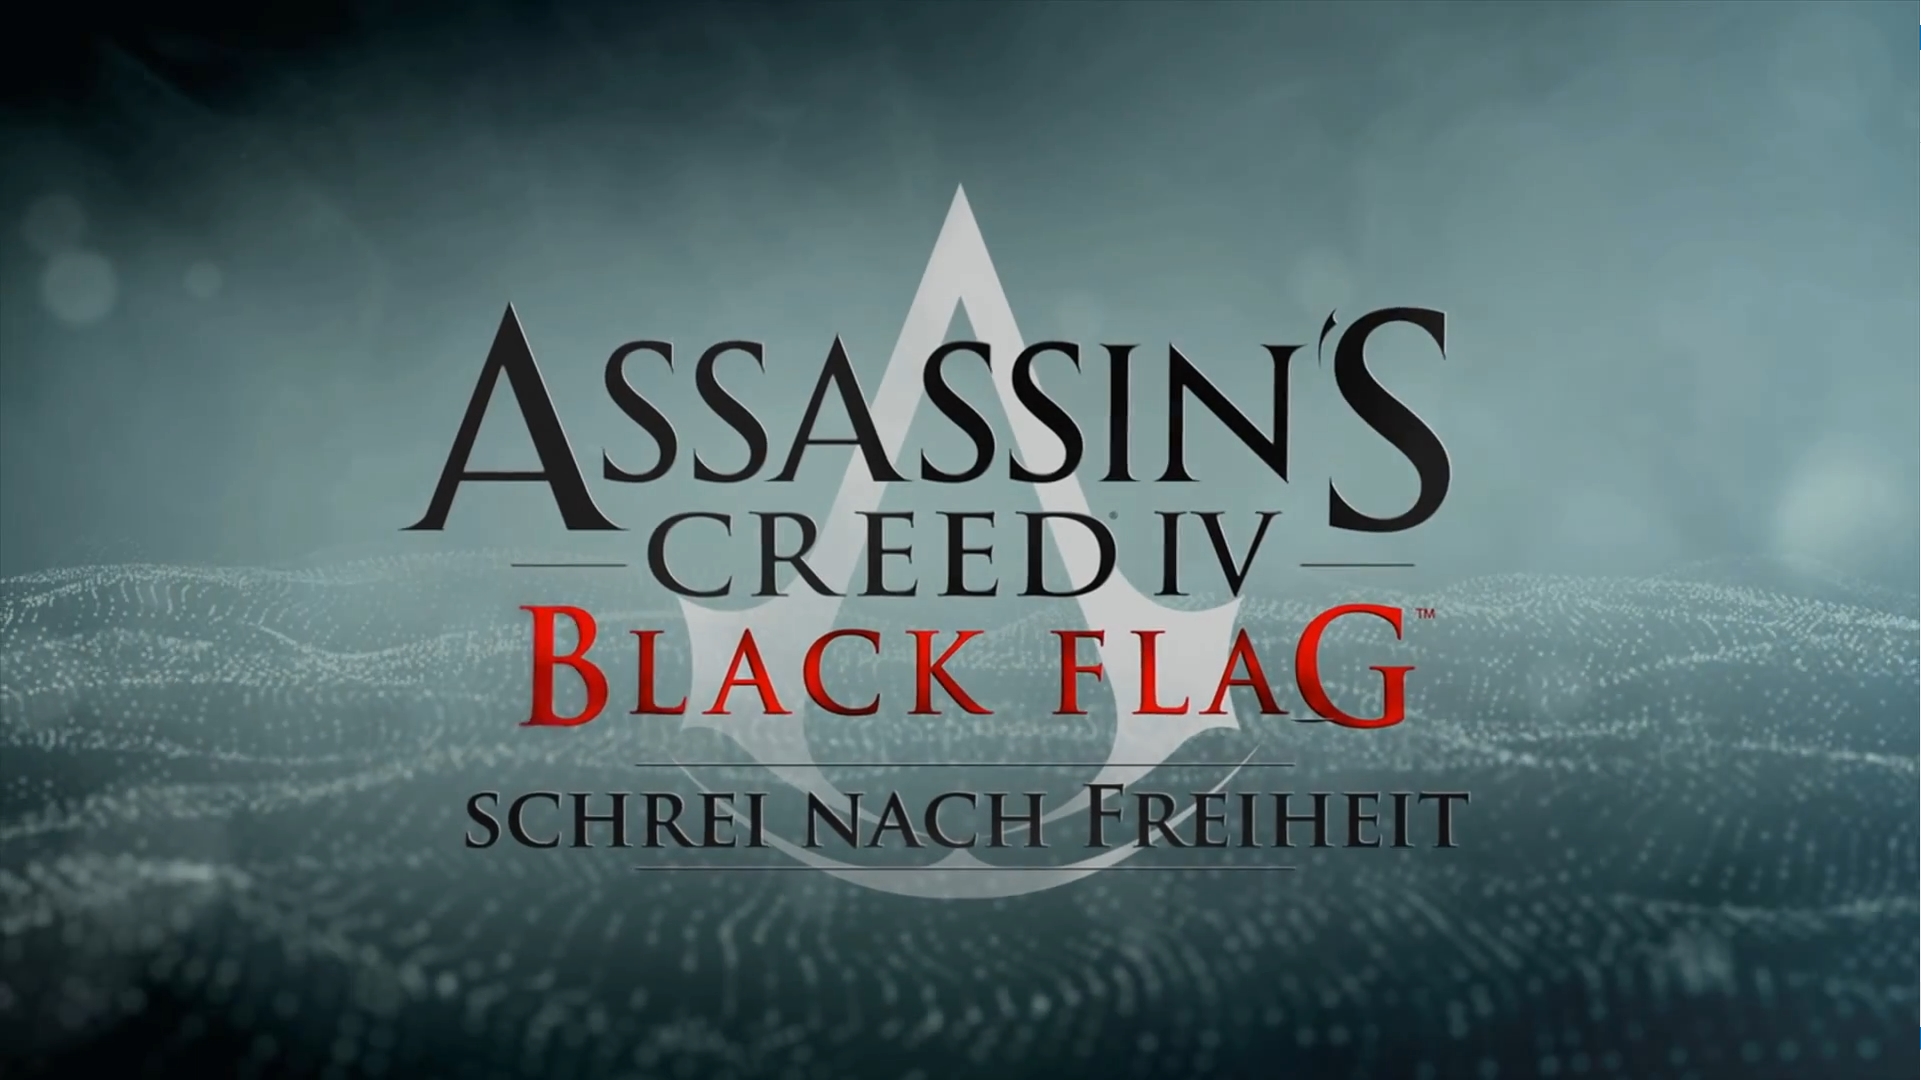 Assassin’s Creed IV Black Flag – Schrei nach Freiheit DLC – Test/Review